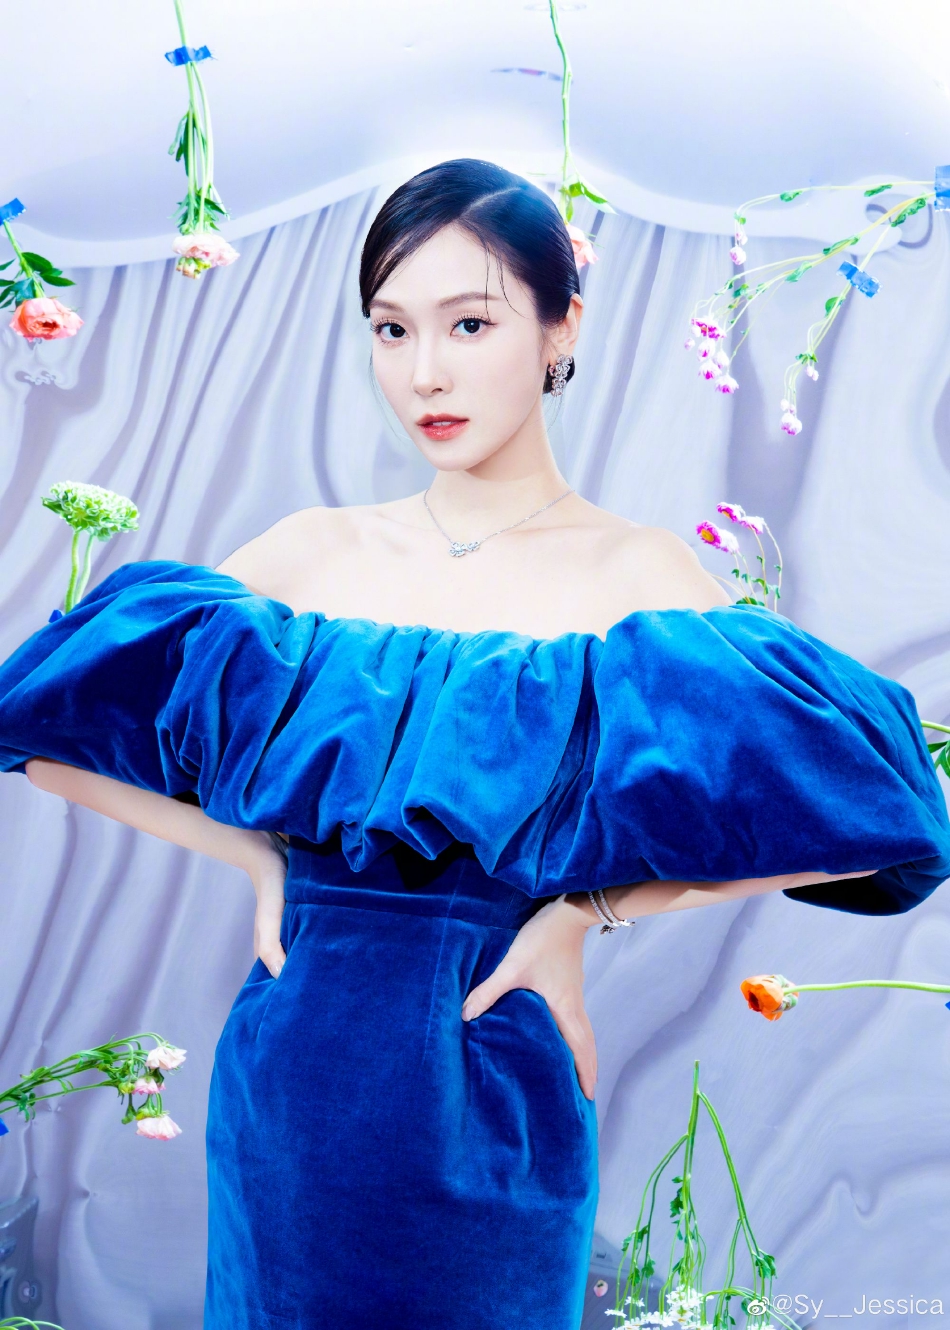 郑秀妍在微博晒出一组美照 蓝色丝绒短裙大秀身材性感撩人